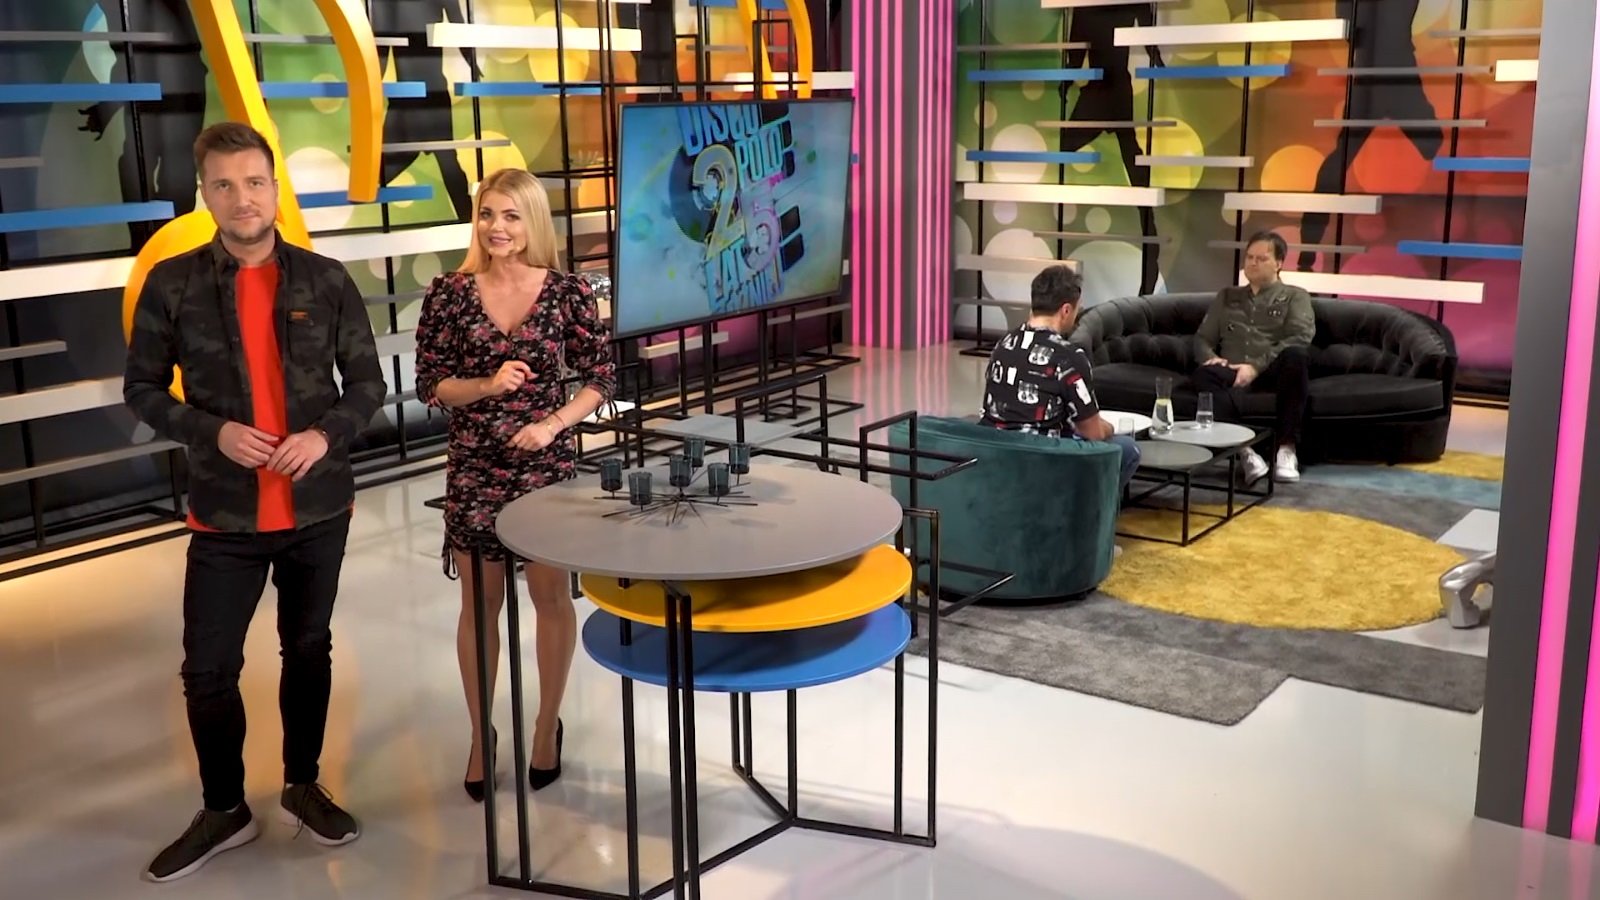 Disco Polo 25 lat później - trzeci odcinek na antenie telewizji Polsat już dziś!